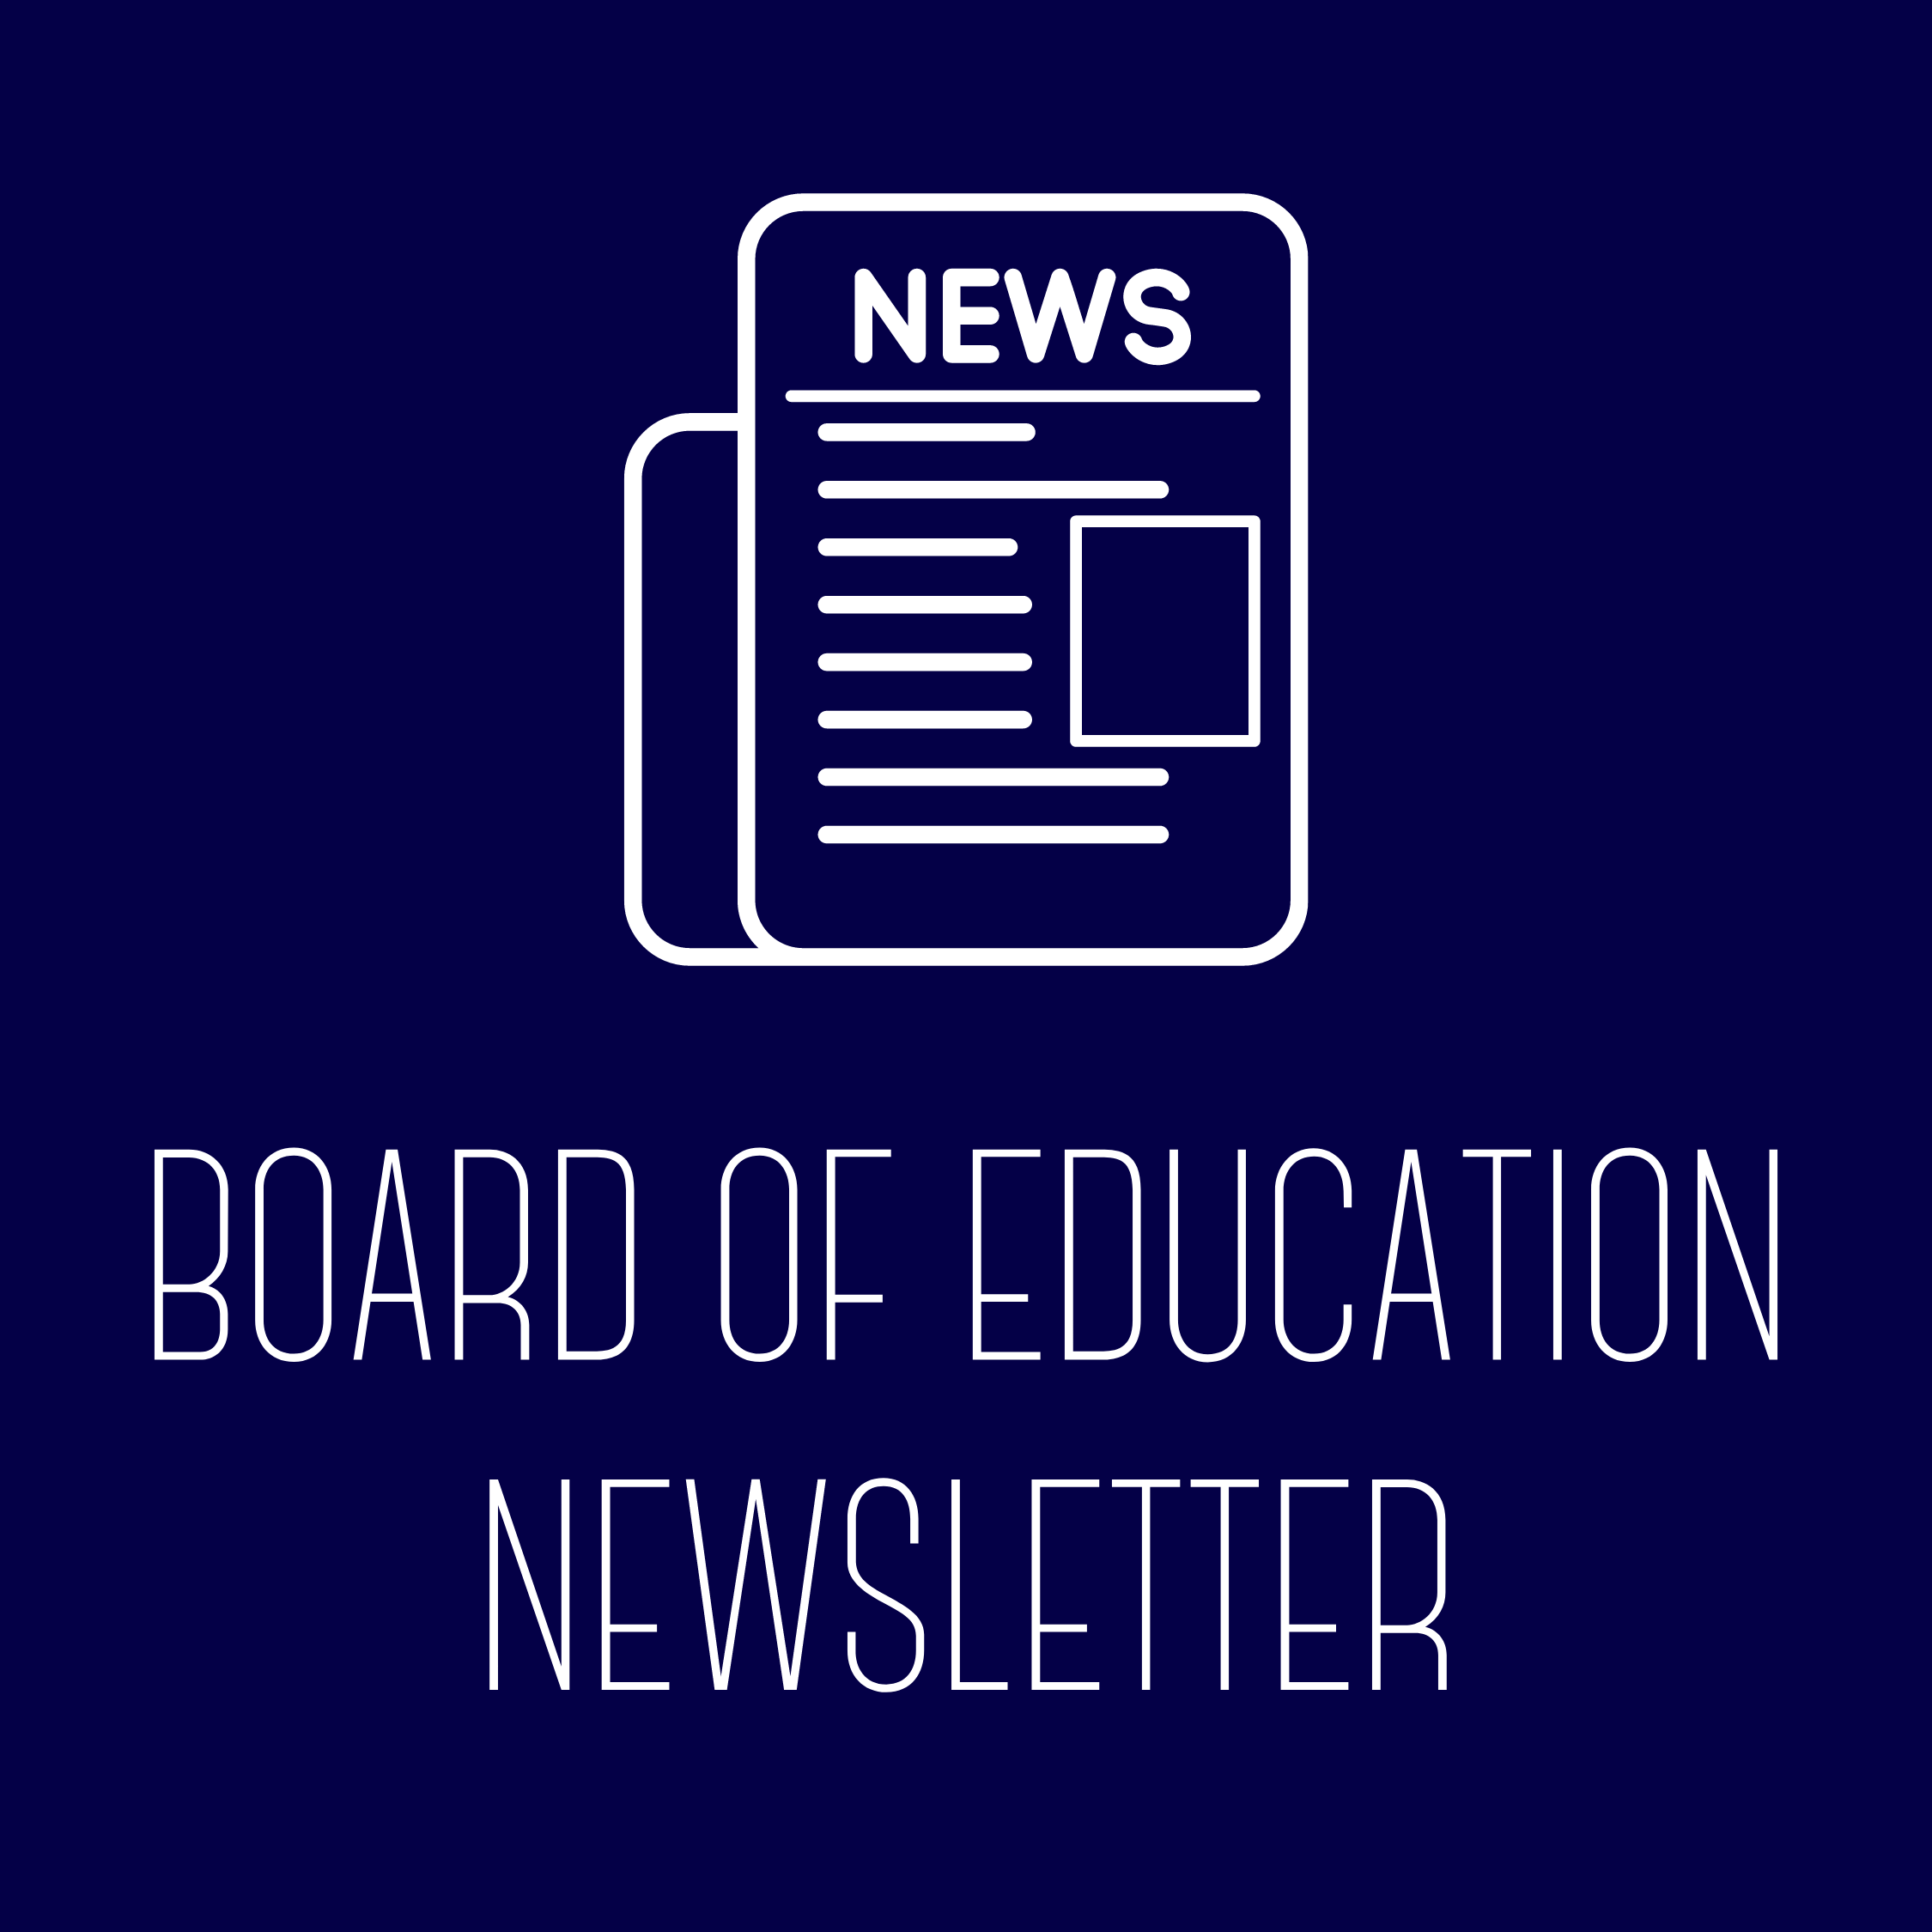 Board of Education Newsletters